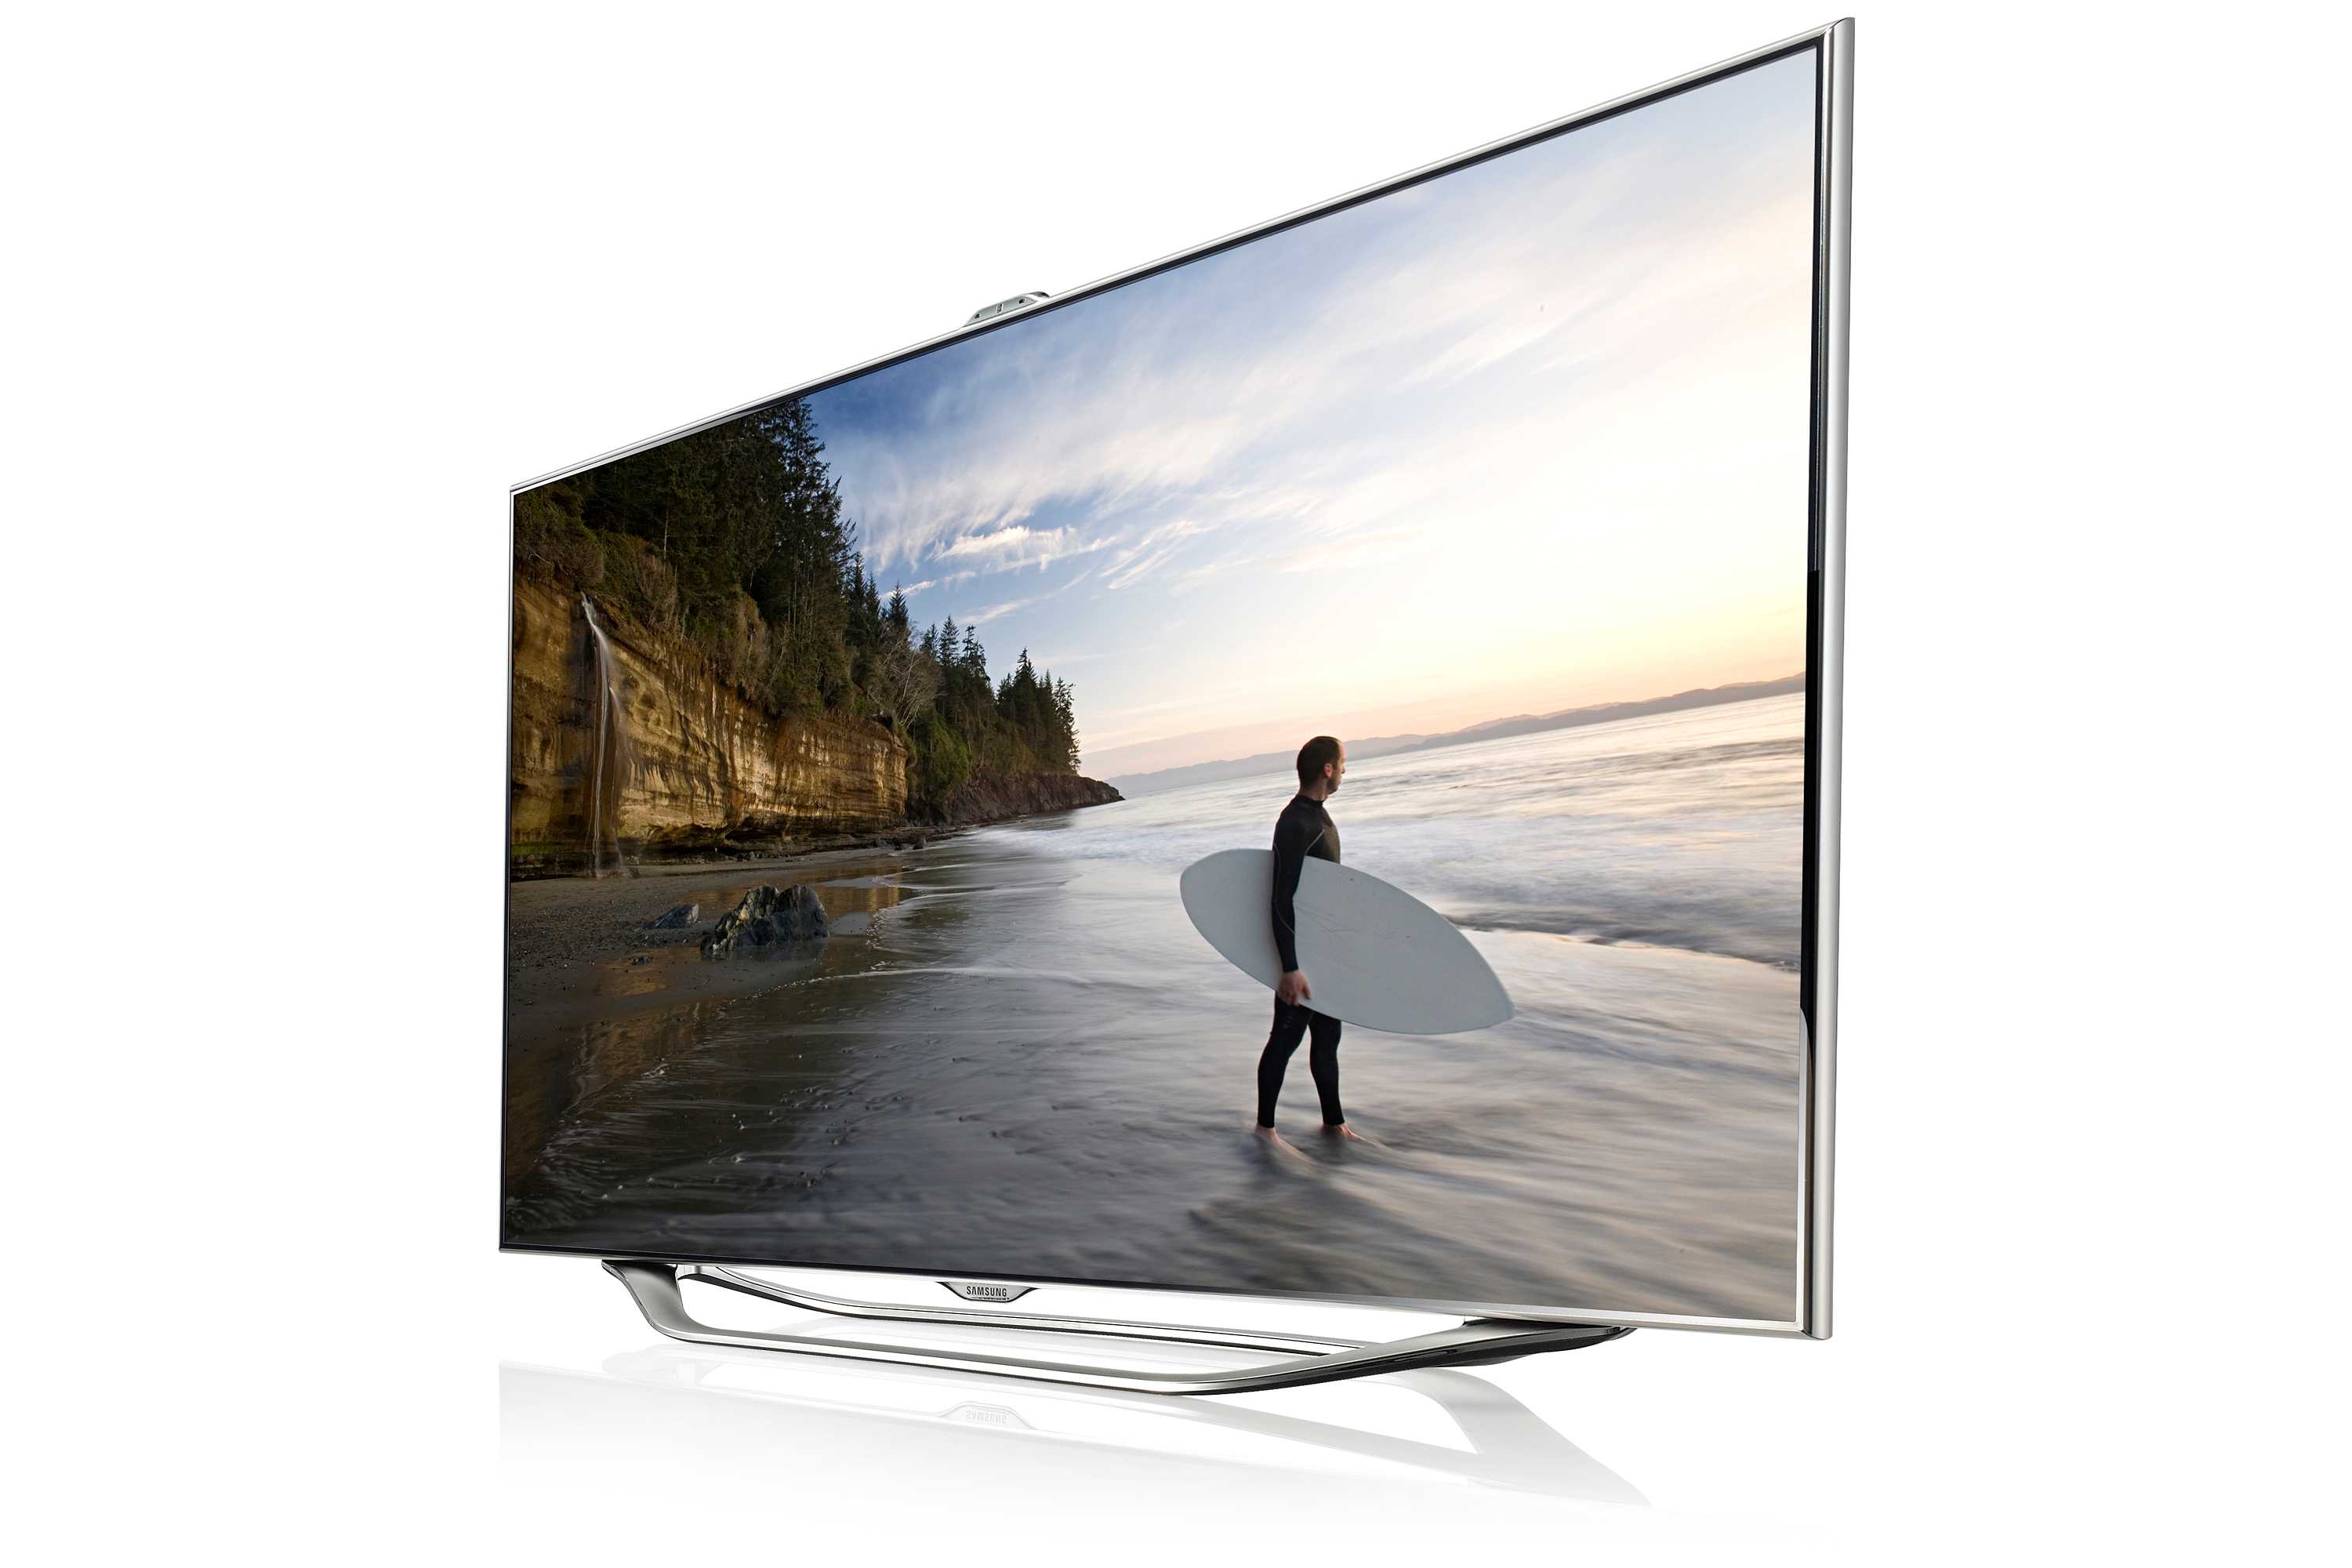 Samsung ue55es8007 - купить , скидки, цена, отзывы, обзор, характеристики - телевизоры